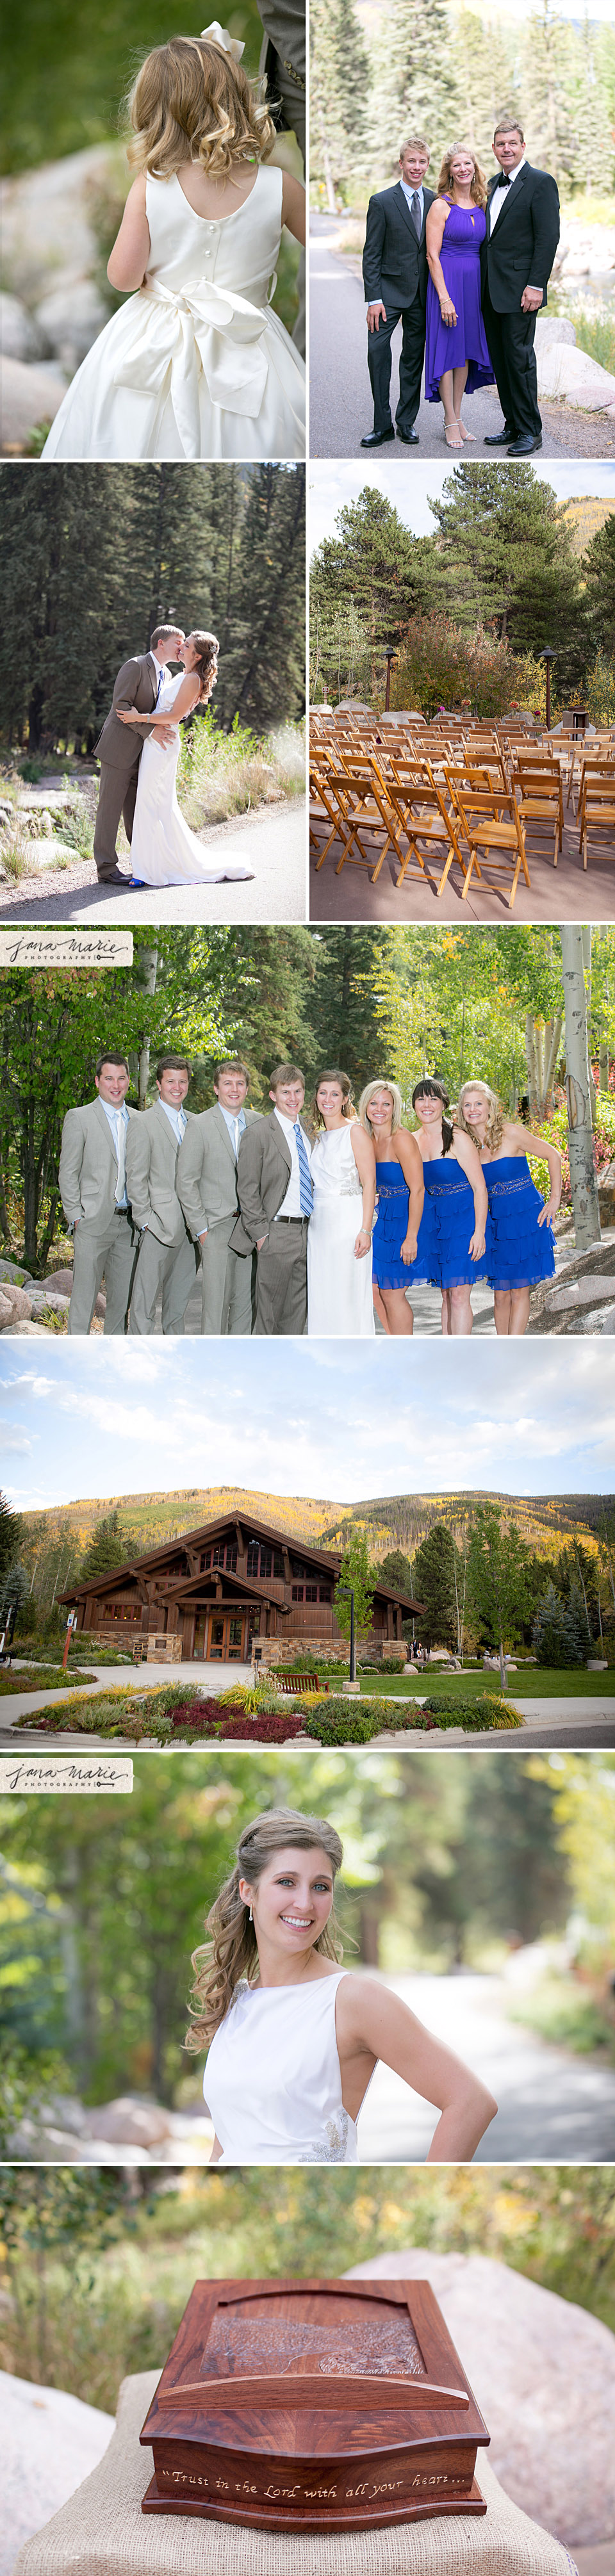 Bridal party, mountain, Donovon events, Colorado wedding photography, Jana Marie Photos